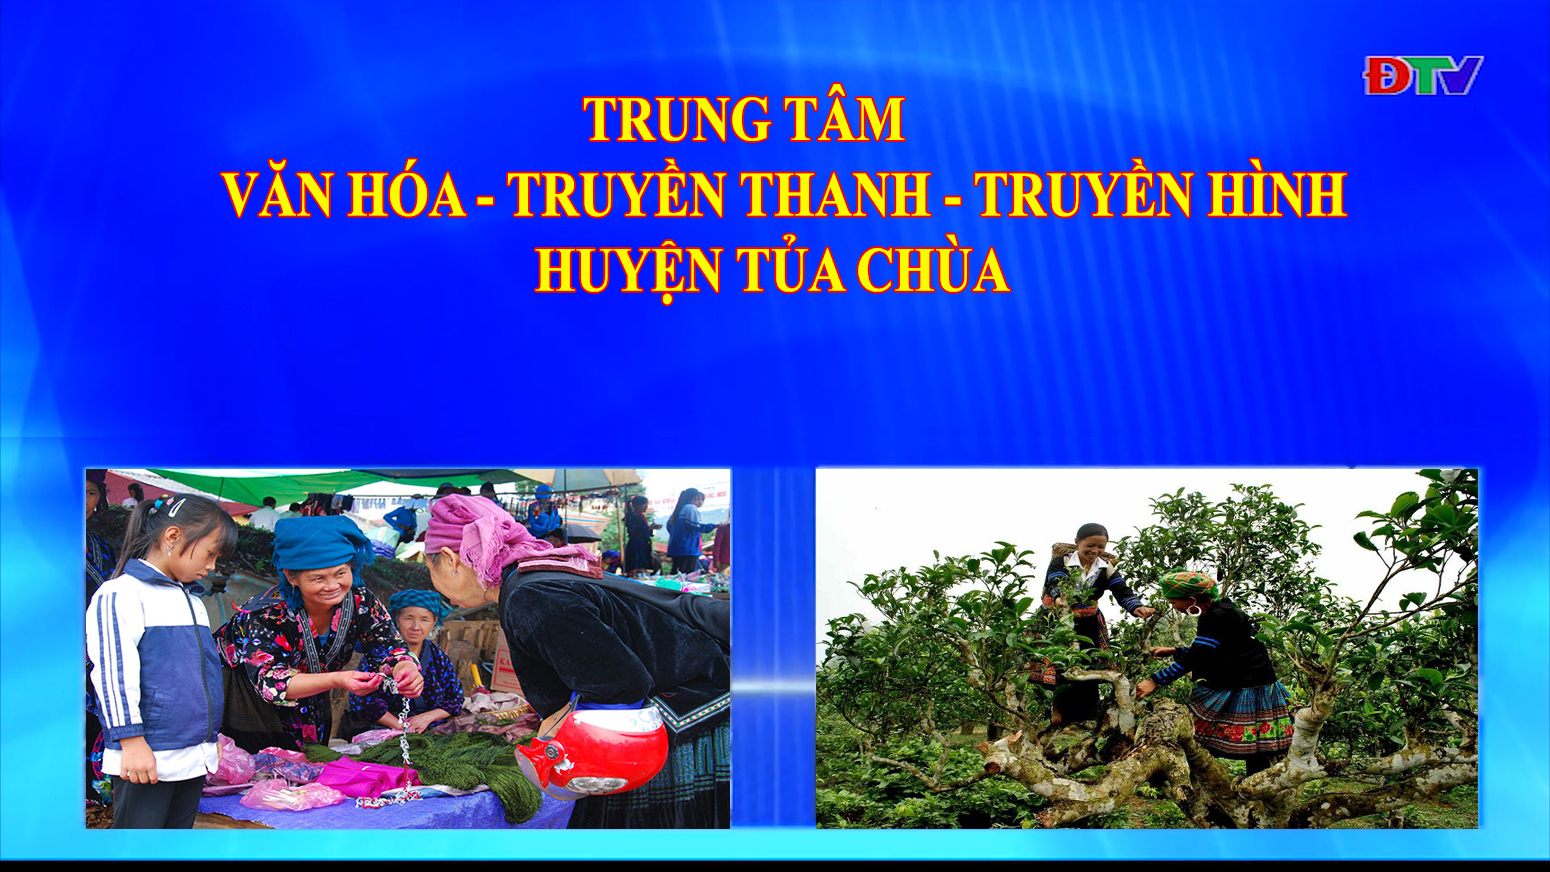 Trung tâm Văn hóa Truyền thanh Truyền hình huyện Tủa Chùa (Ngày 24-7-2020)